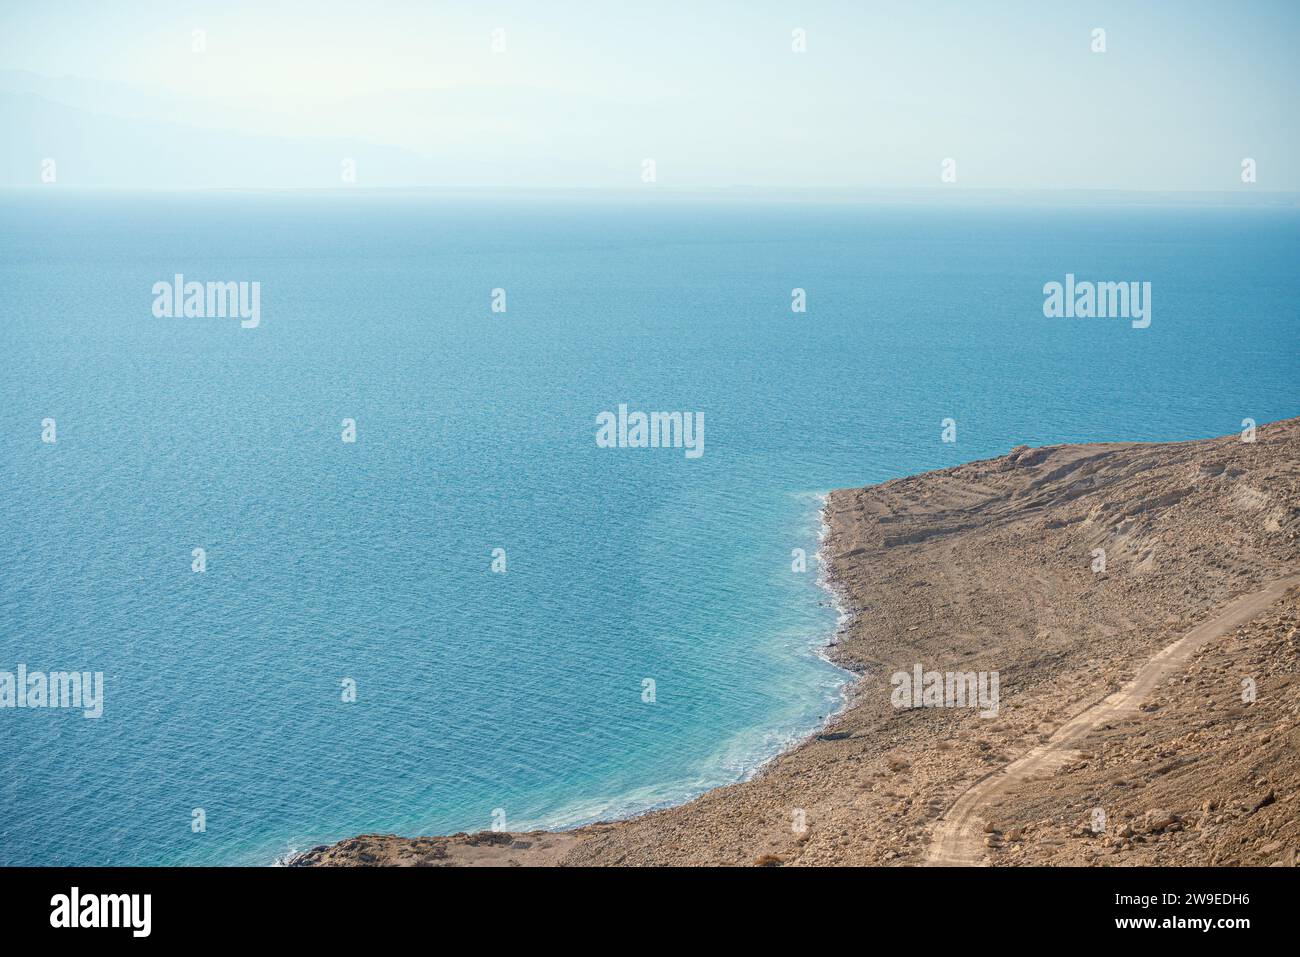 Arid coast on the Dead Sea Israeli side Stock Photo